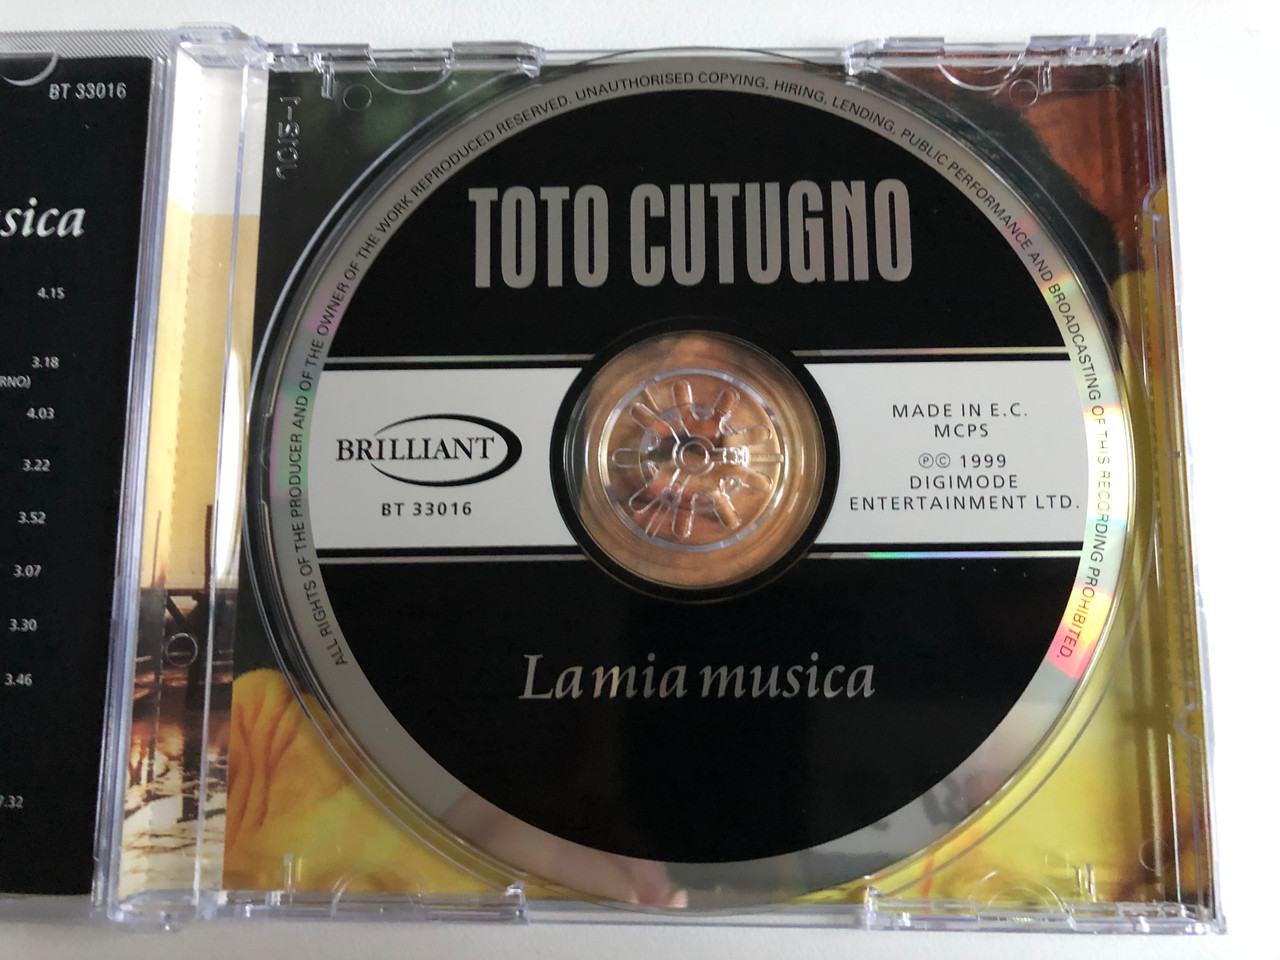 Toto Cutugno – La Mia Musica / L'Italiano, La Mia Musica, Africa (L' Ete  Indien), Donna Donna Mia, Solo Noi, and many others / Brilliant Audio CD  1999 / BT 33016 - Bible in My Language